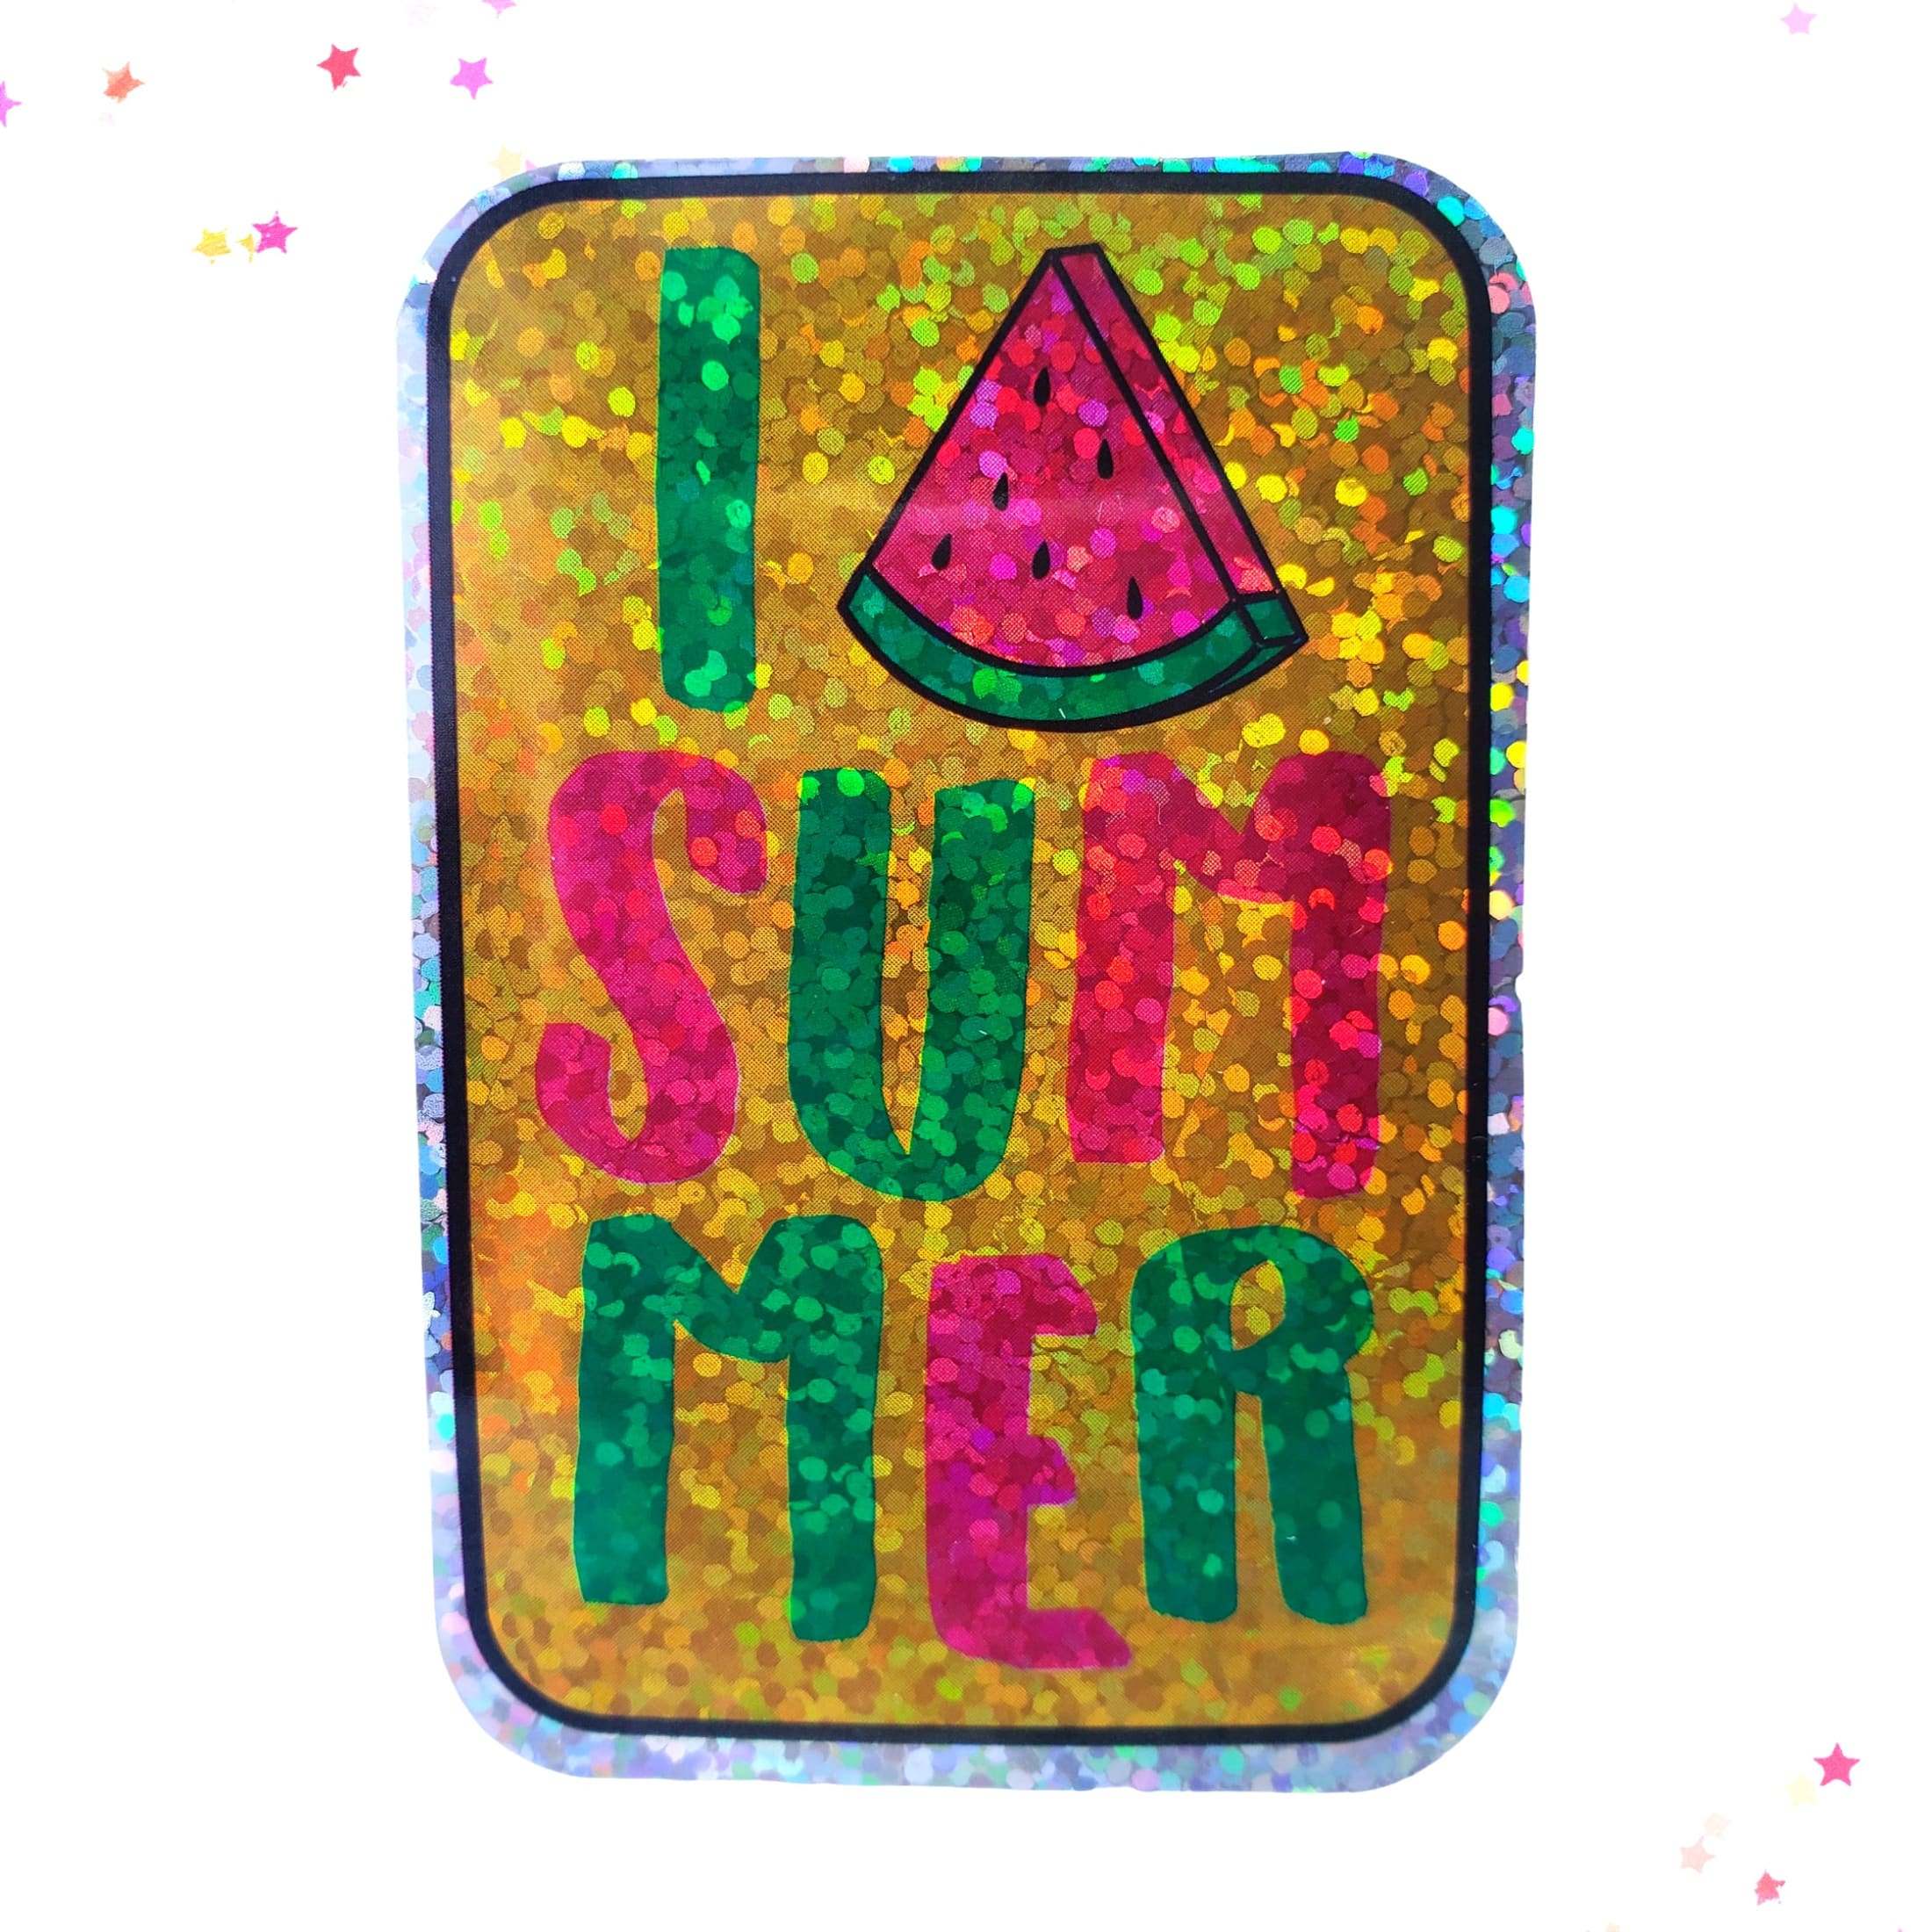 Premium Sticker - Sparkly Holographic Glitter Love Summer